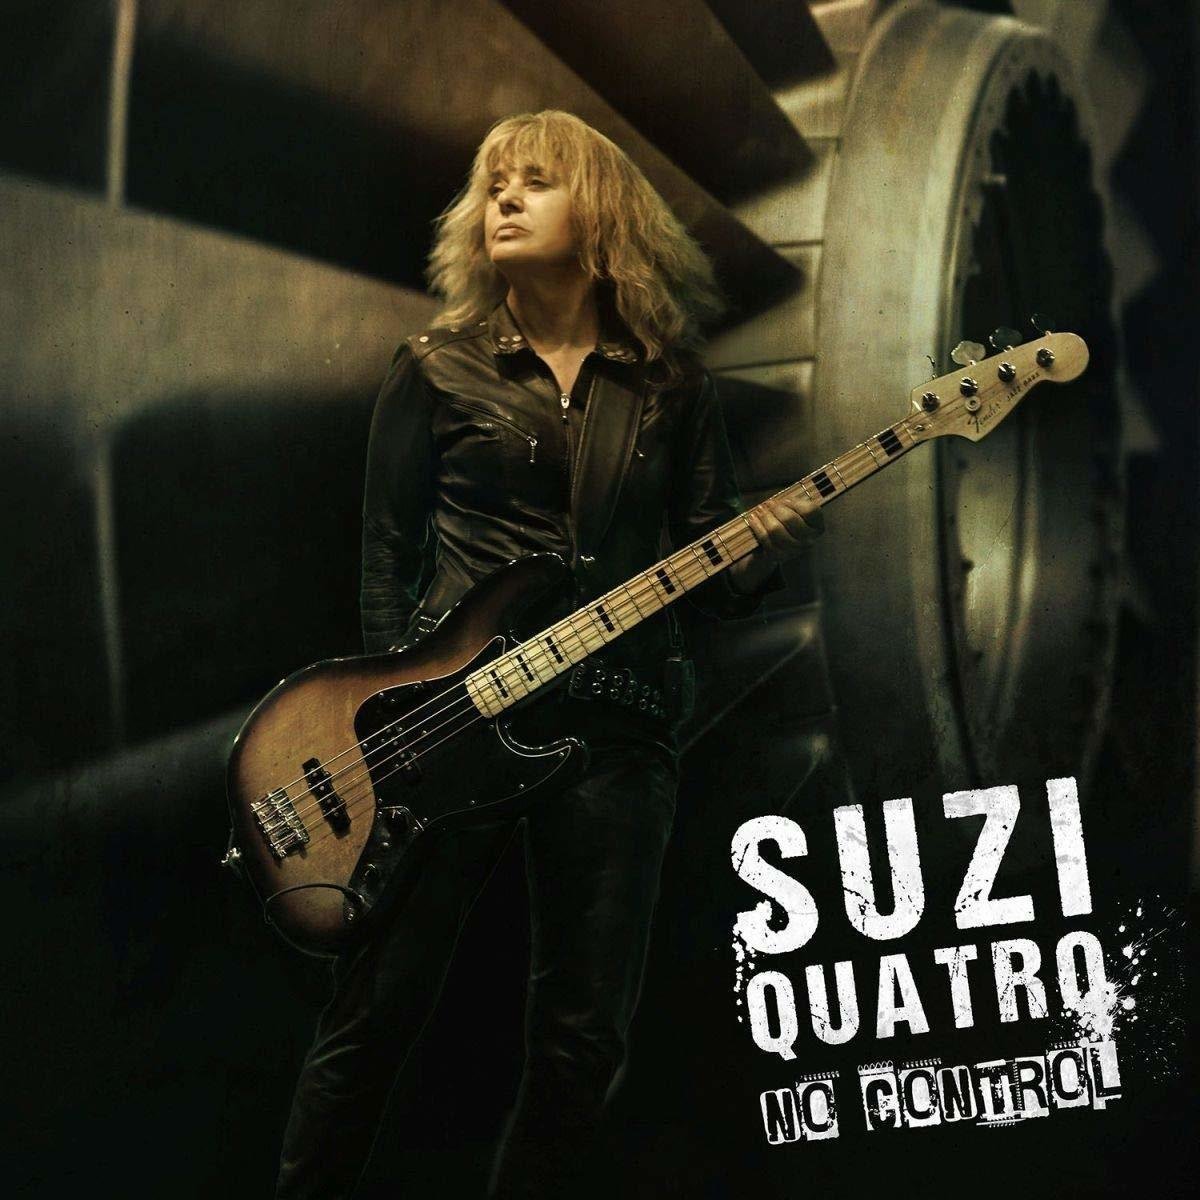 Vinyl Record Suzi Quatro - No Control (2 LP + CD)